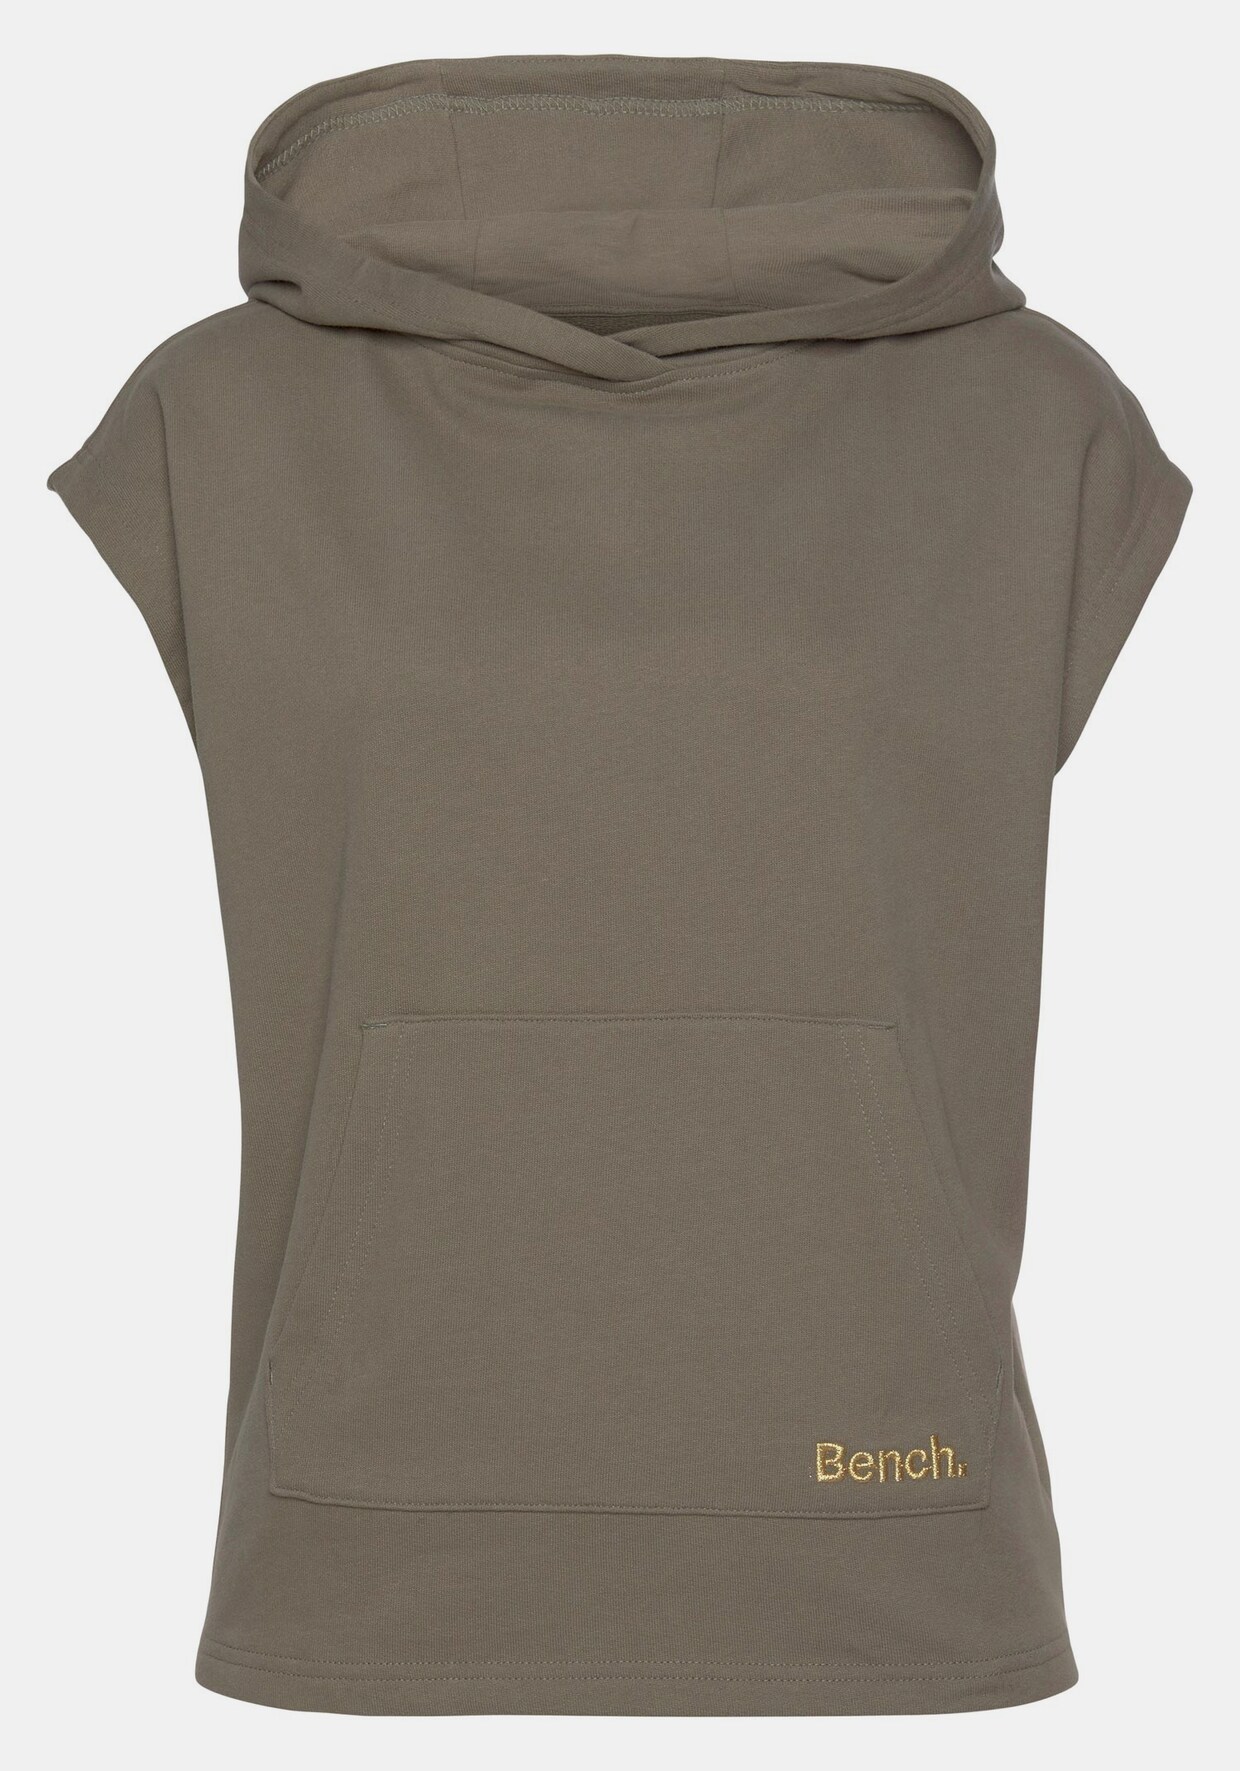 Bench. Kapuzensweatshirt - khaki